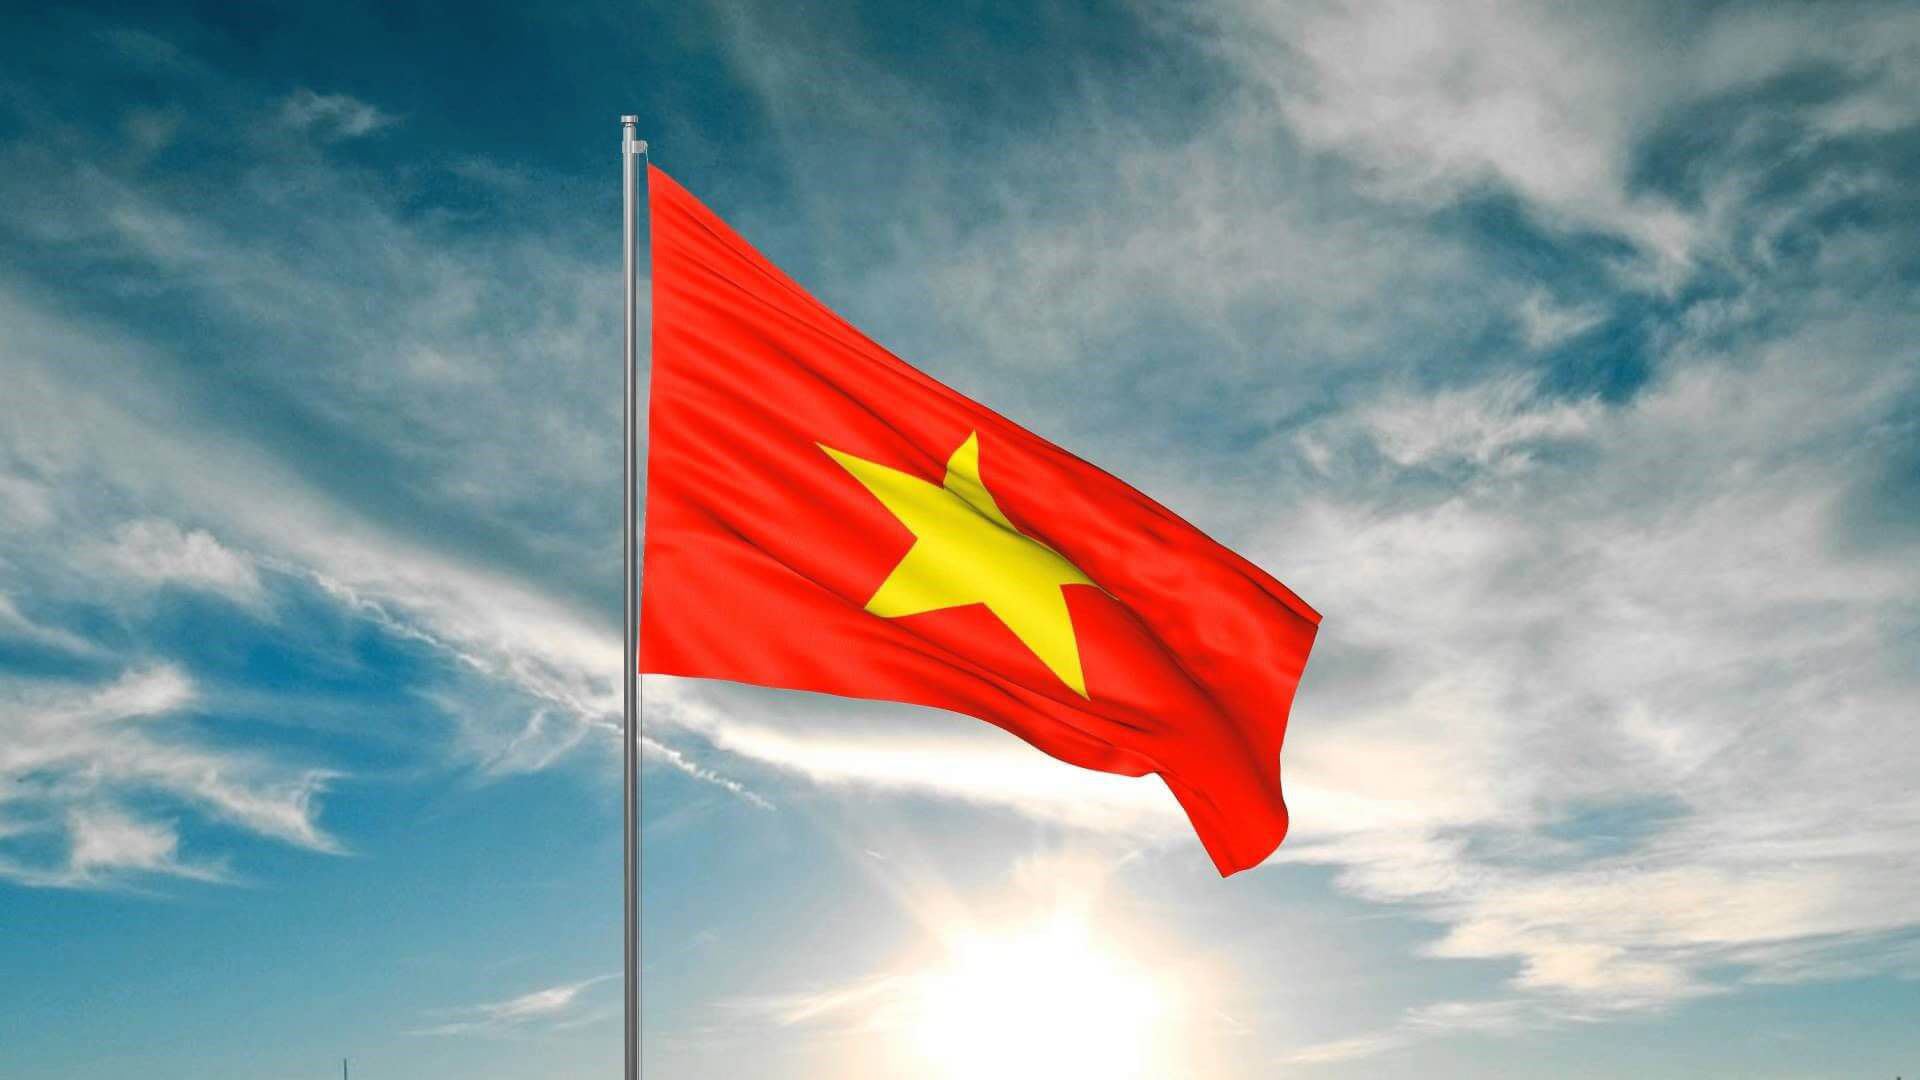 Áo cờ đỏ sao vàng là biểu tượng của dân tộc Việt Nam, tượng trưng cho sự kiên cường, bất khuất và tinh thần đoàn kết. Xem hình ảnh này để cảm nhận được ý nghĩa sâu sắc của áo cờ đỏ sao vàng, cũng như tình yêu của người Việt Nam đối với dân tộc và quê hương.